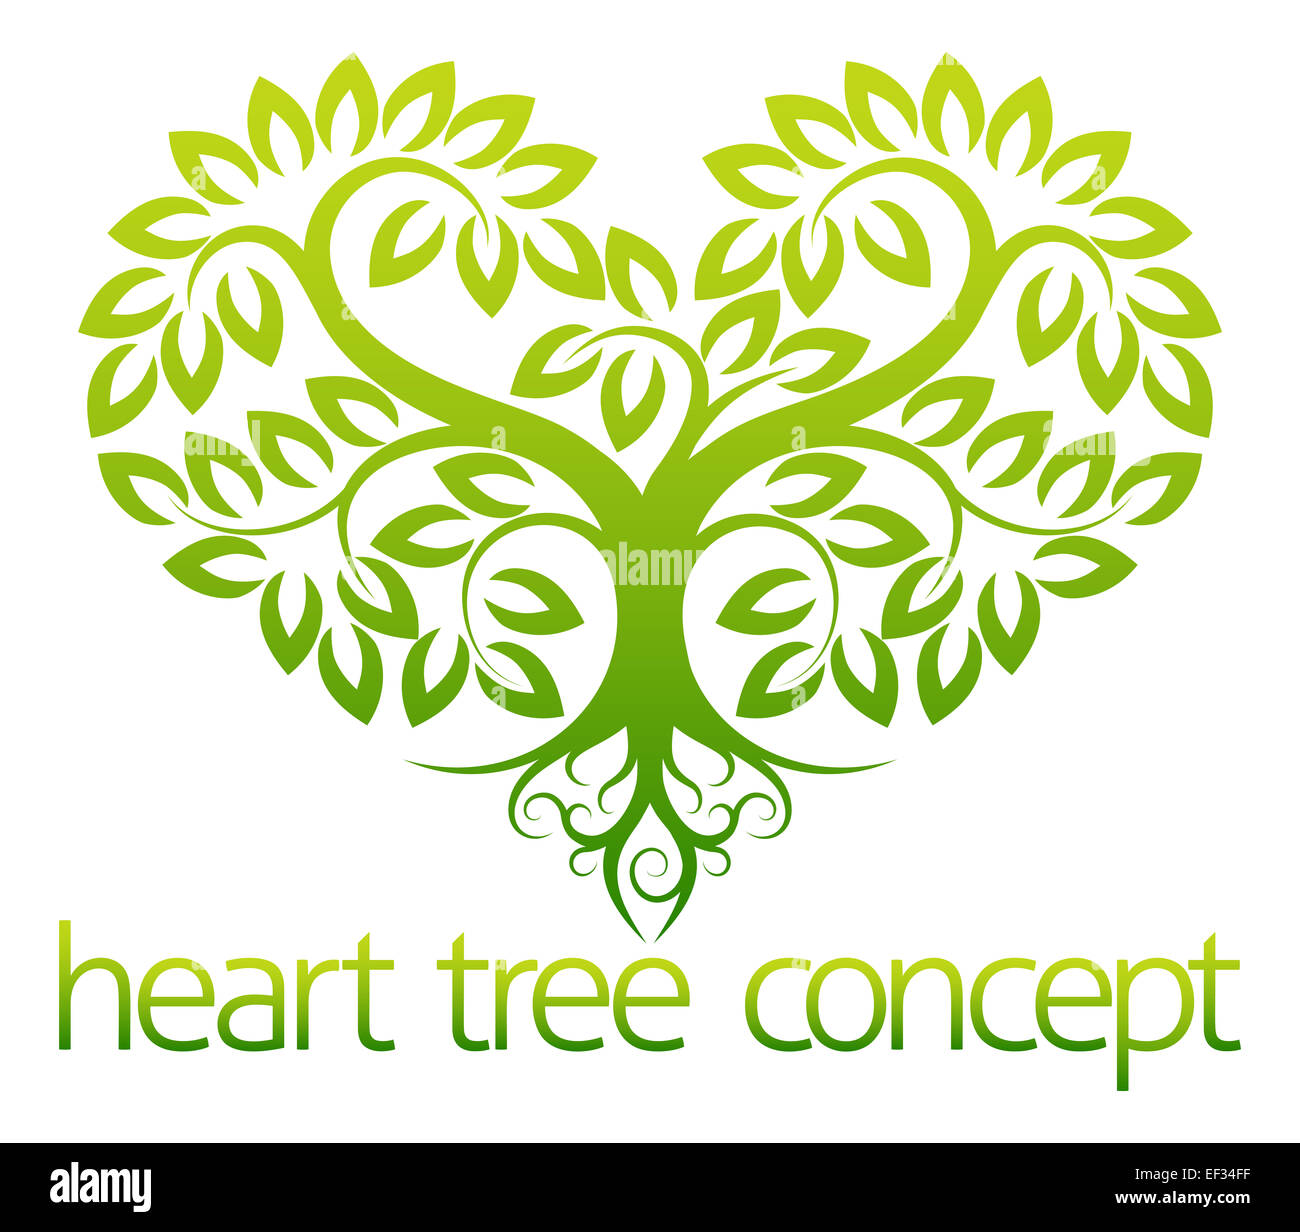 Eine abstrakte Darstellung der ein Baum wächst in Form von einem Herz-Konzept-design Stockfoto